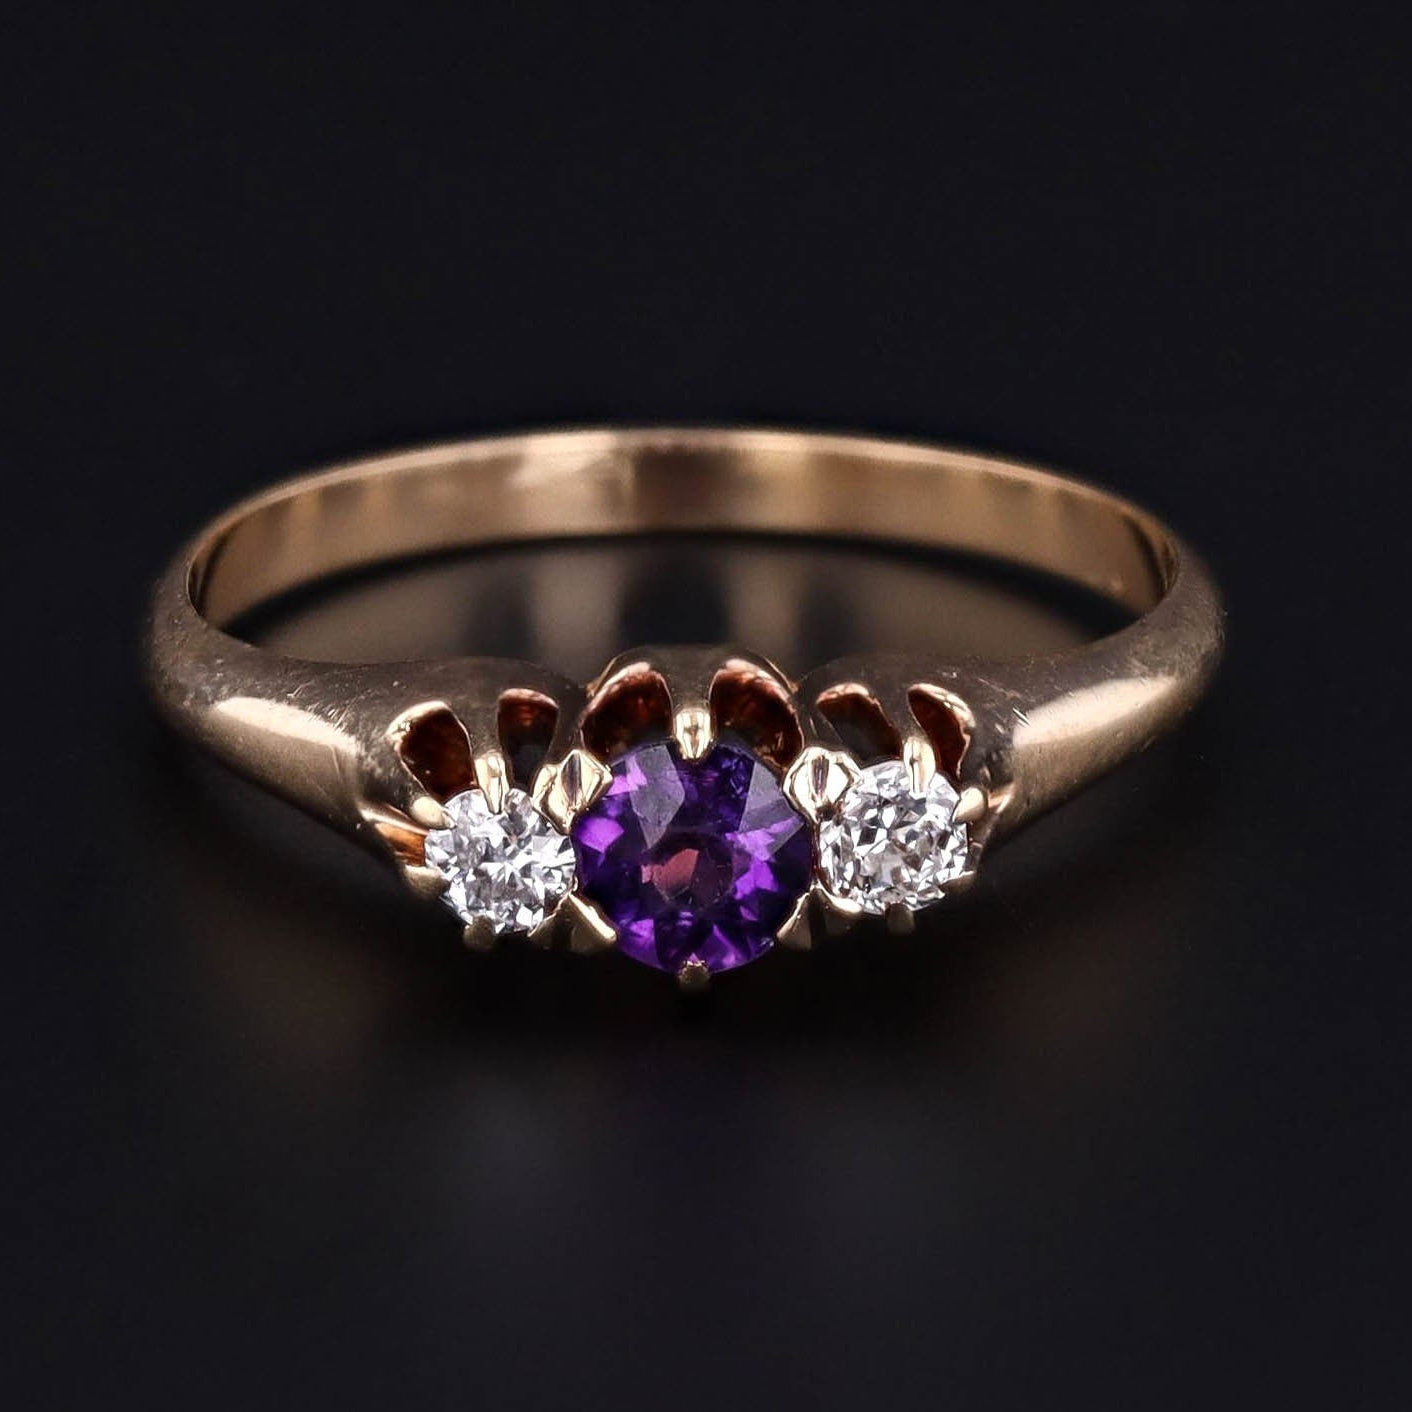 Vintage Amethyst & Diamond Ring | 14k Gold Amethyst Ring 